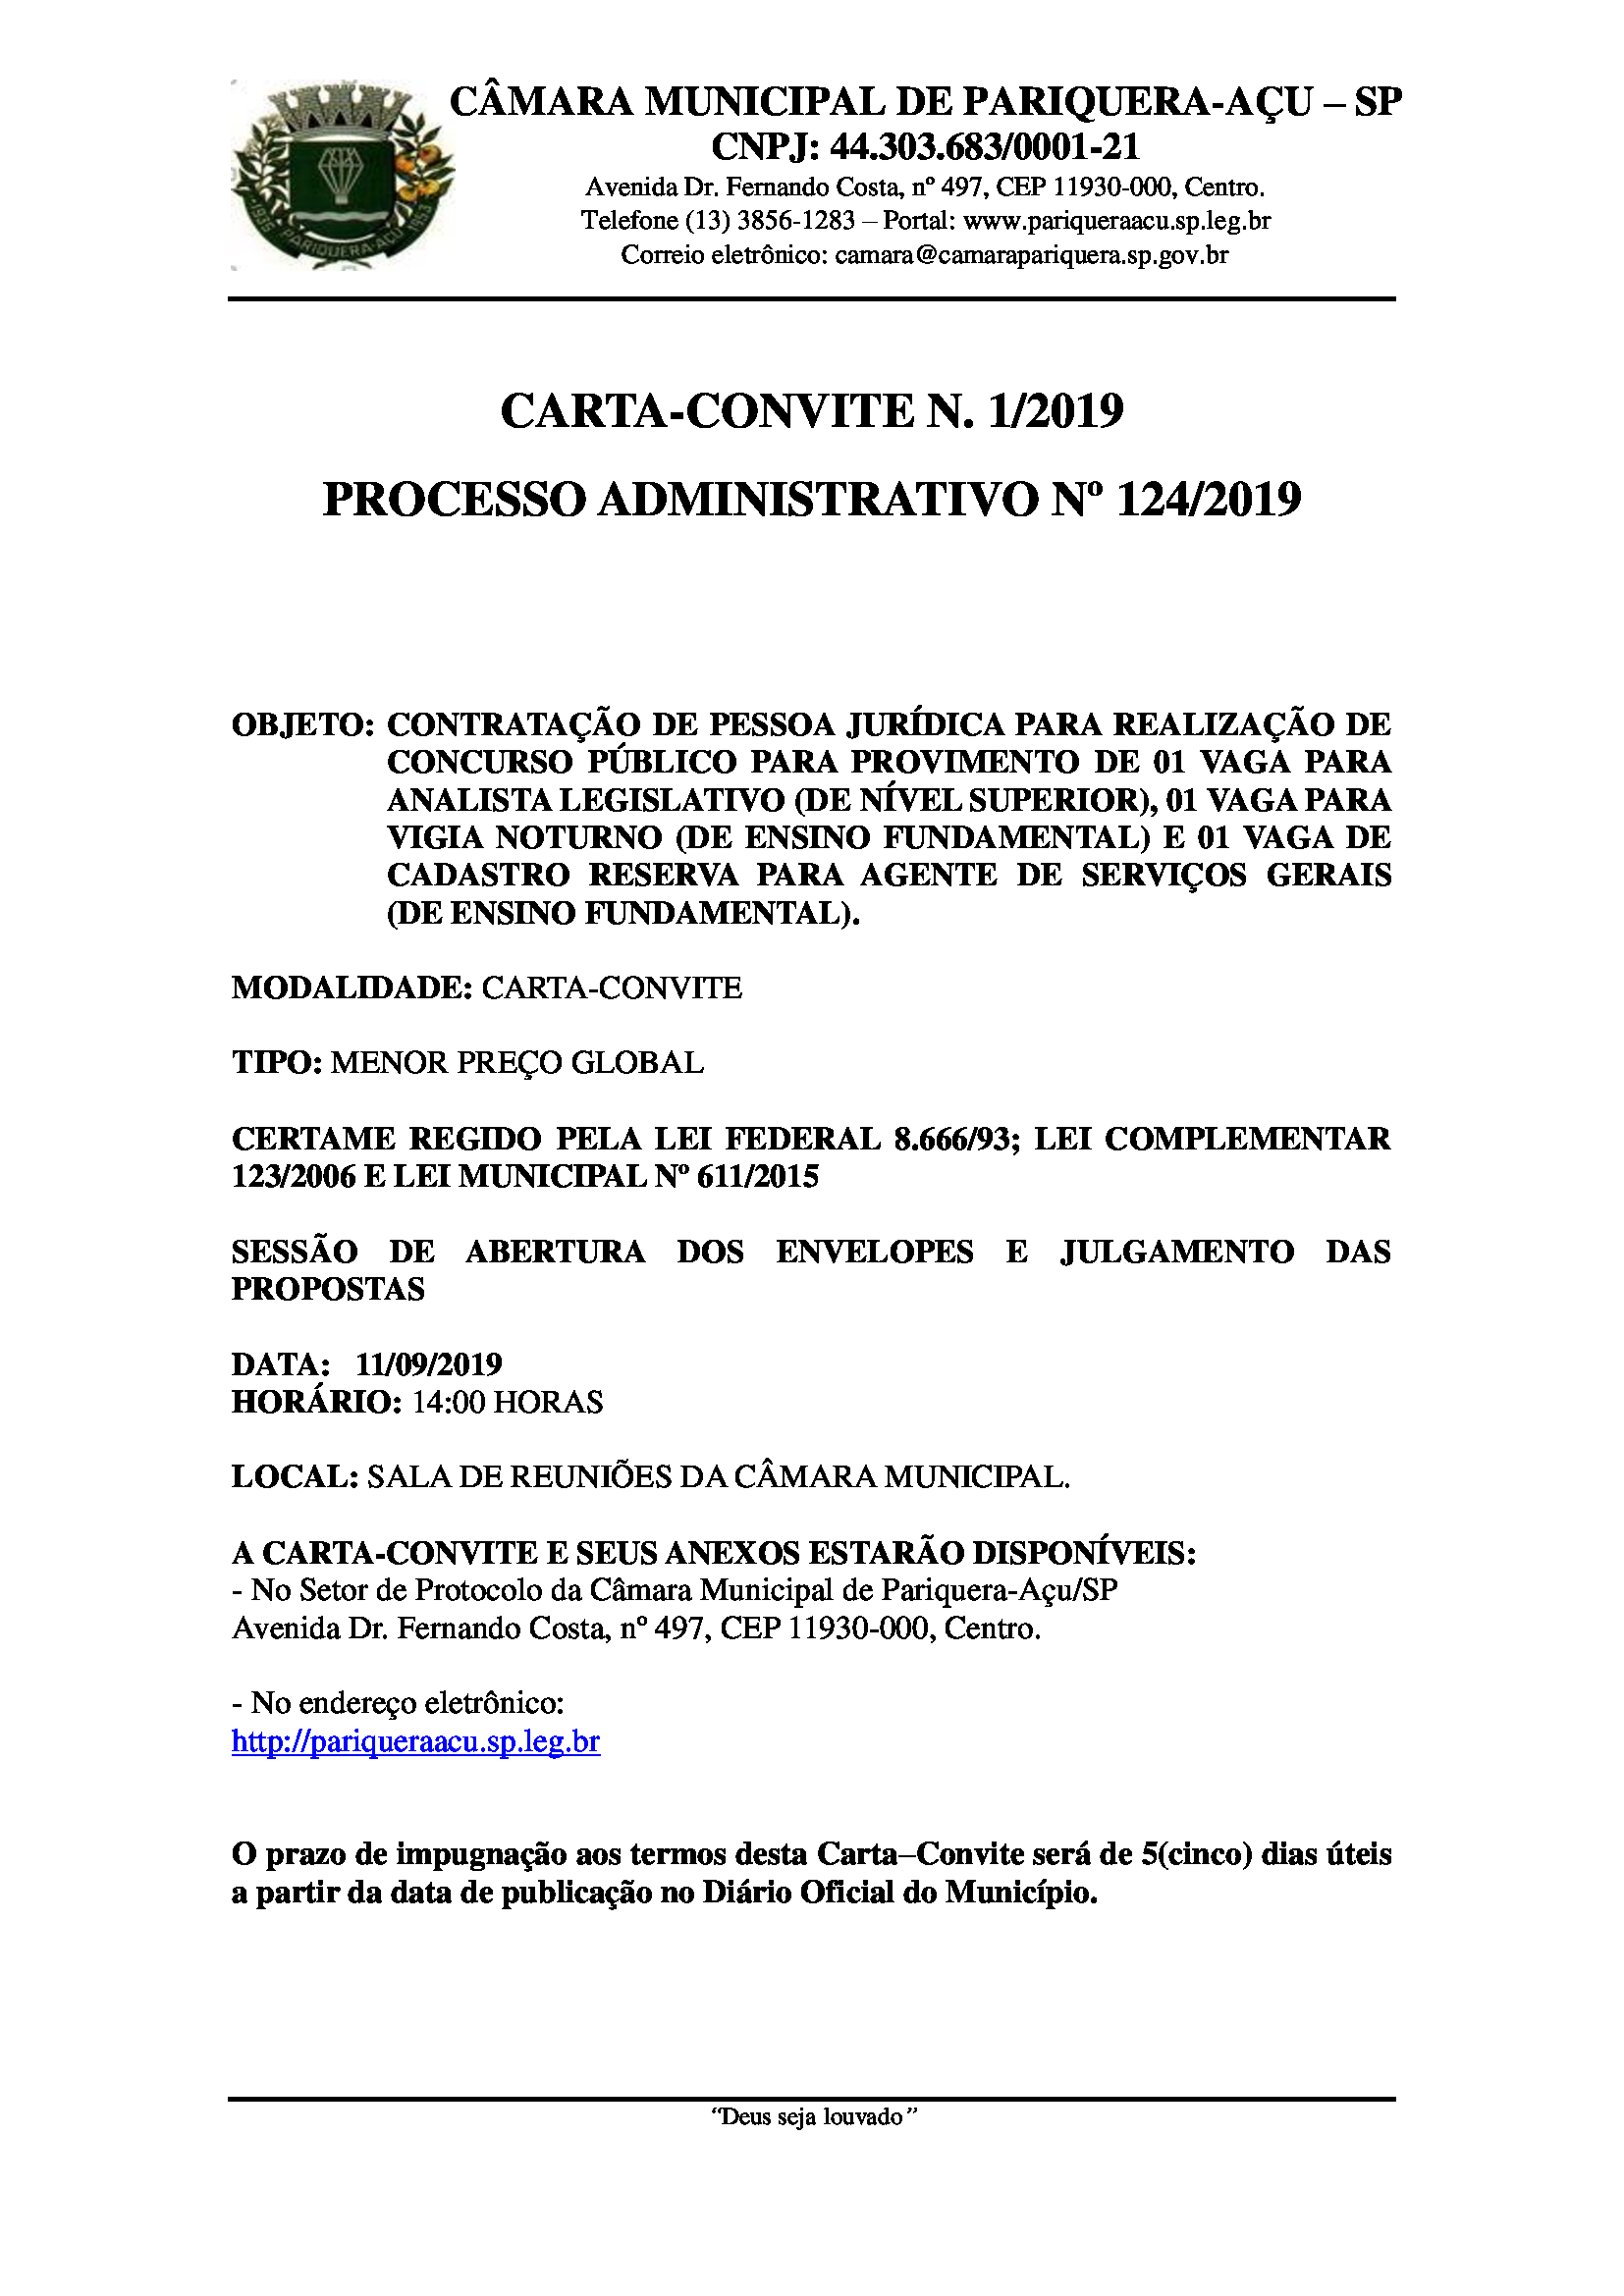 Termo de Adjudicação da Carta-Convite nº 1/2019.